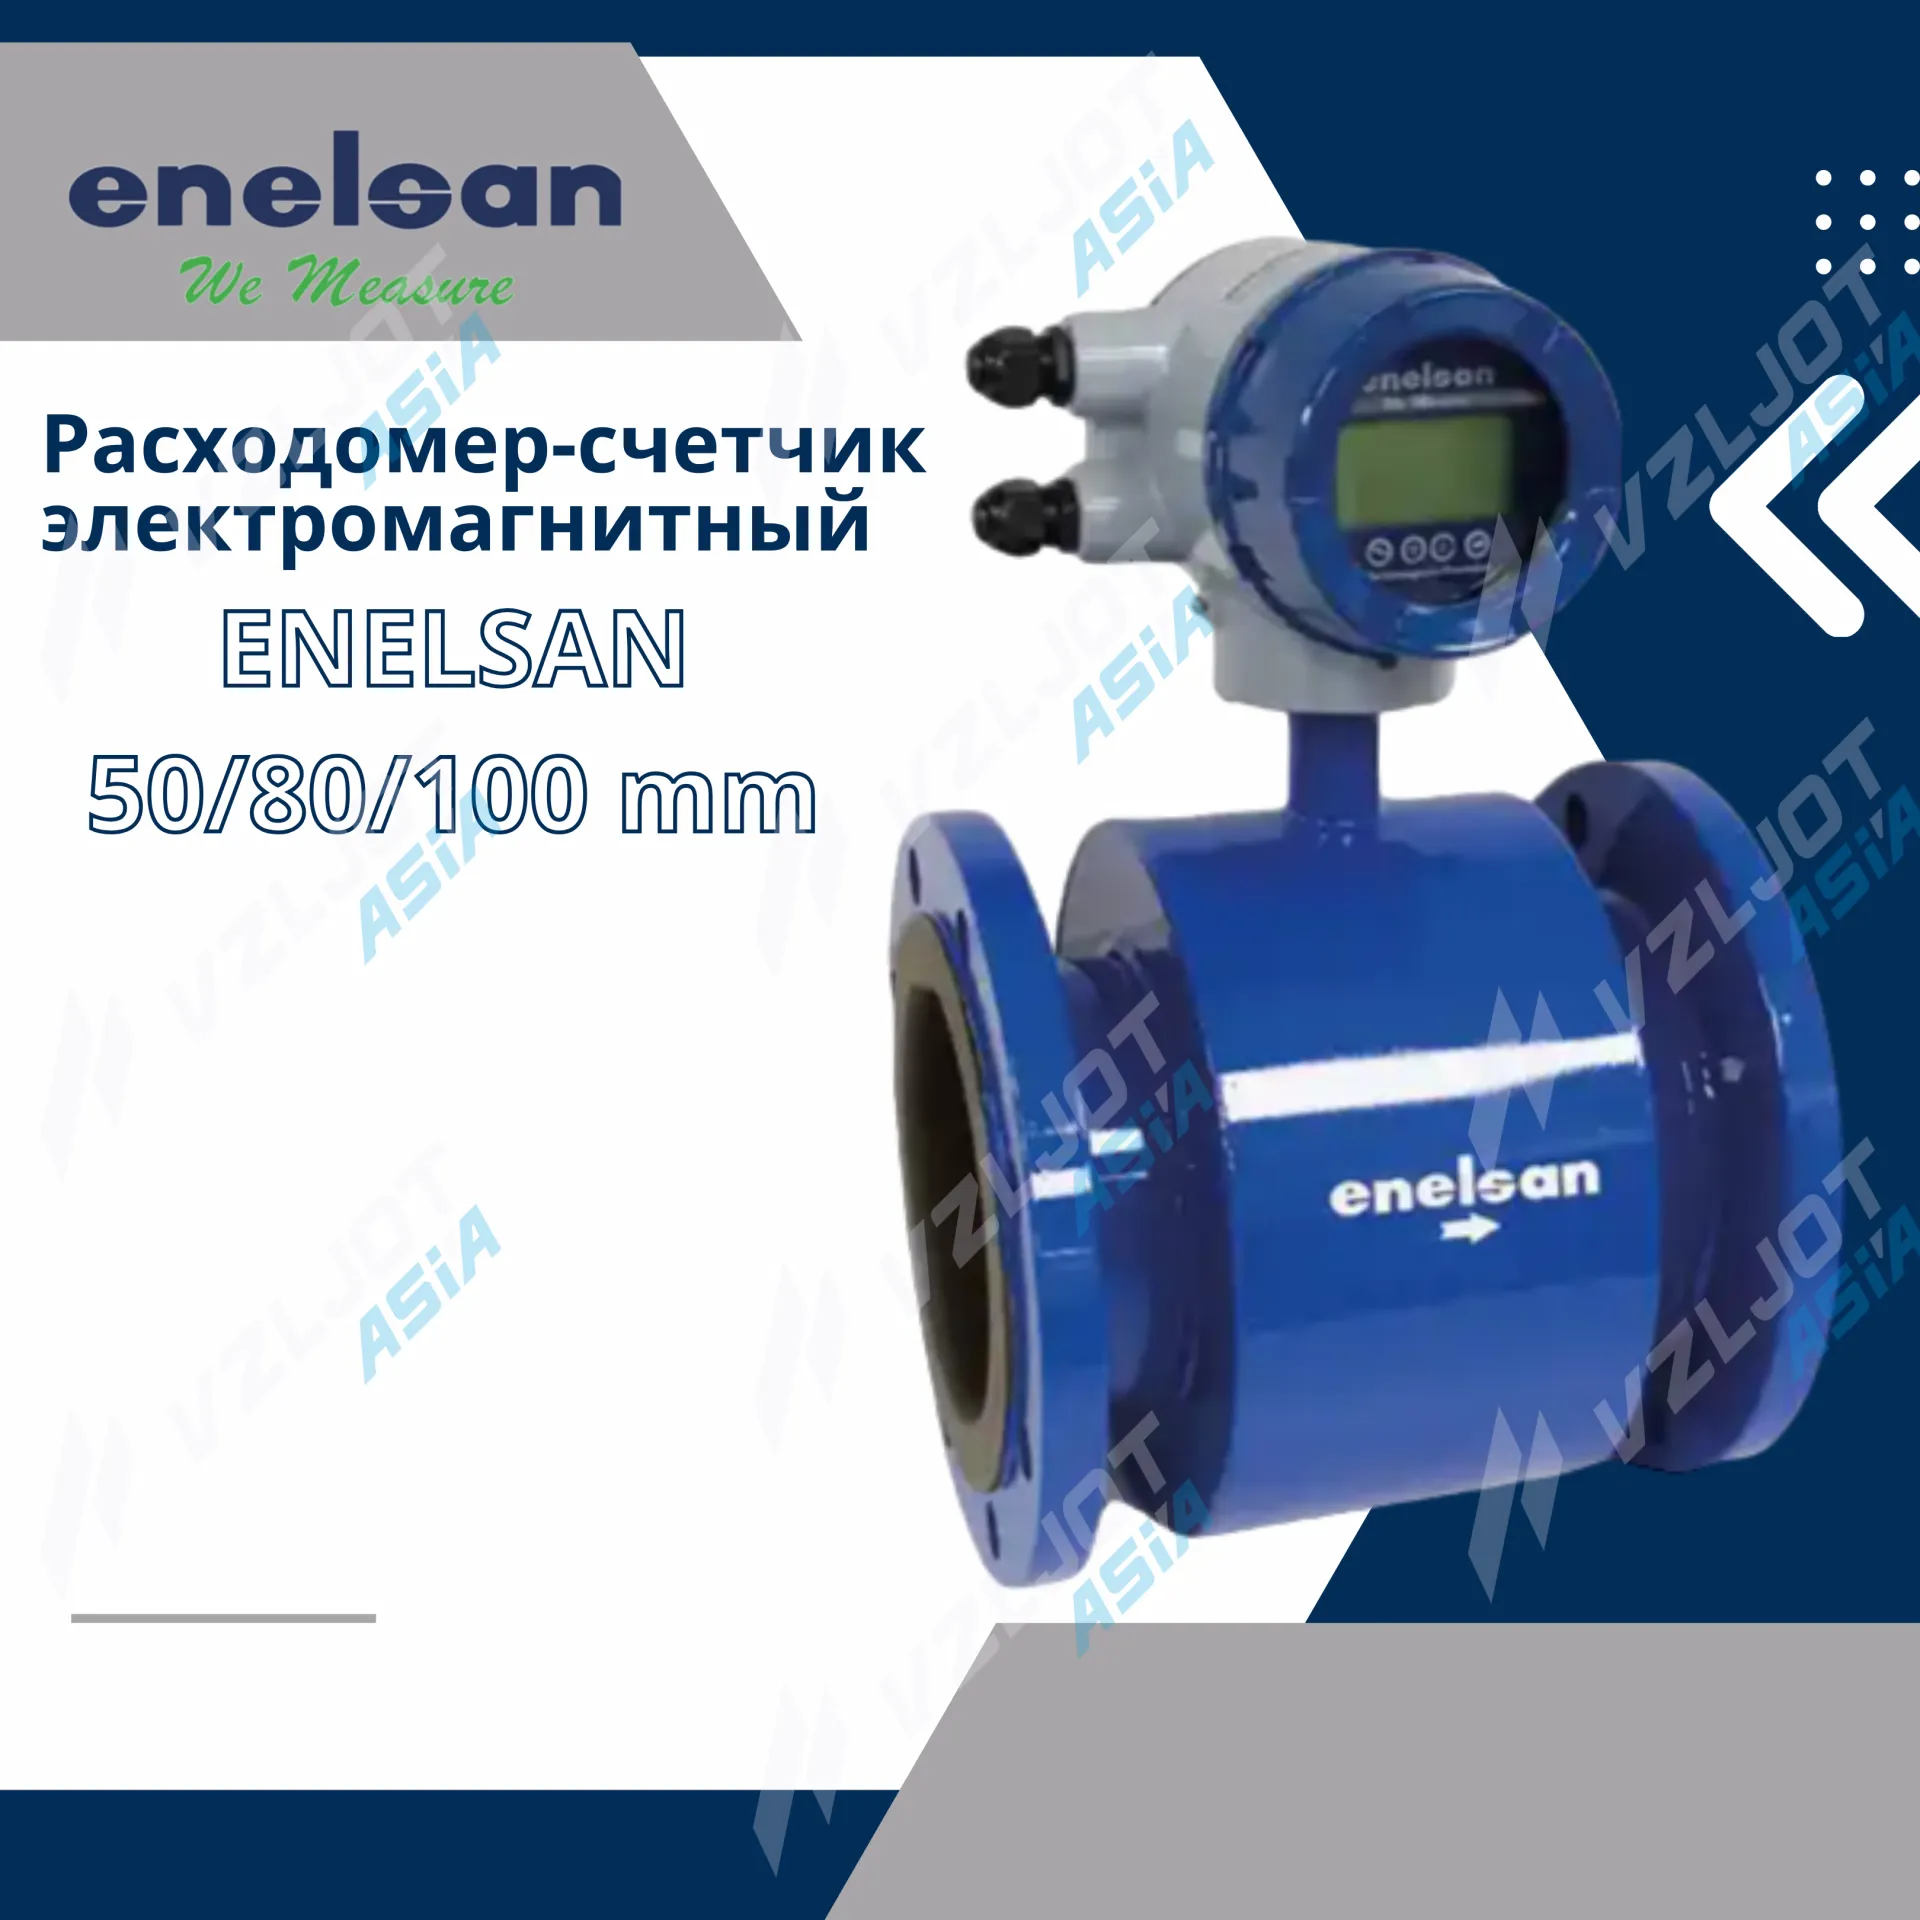 Elektromagnit suv hisoblagich (oqim o'lchagich) ENELSAN DN 50/80/100 mm#1